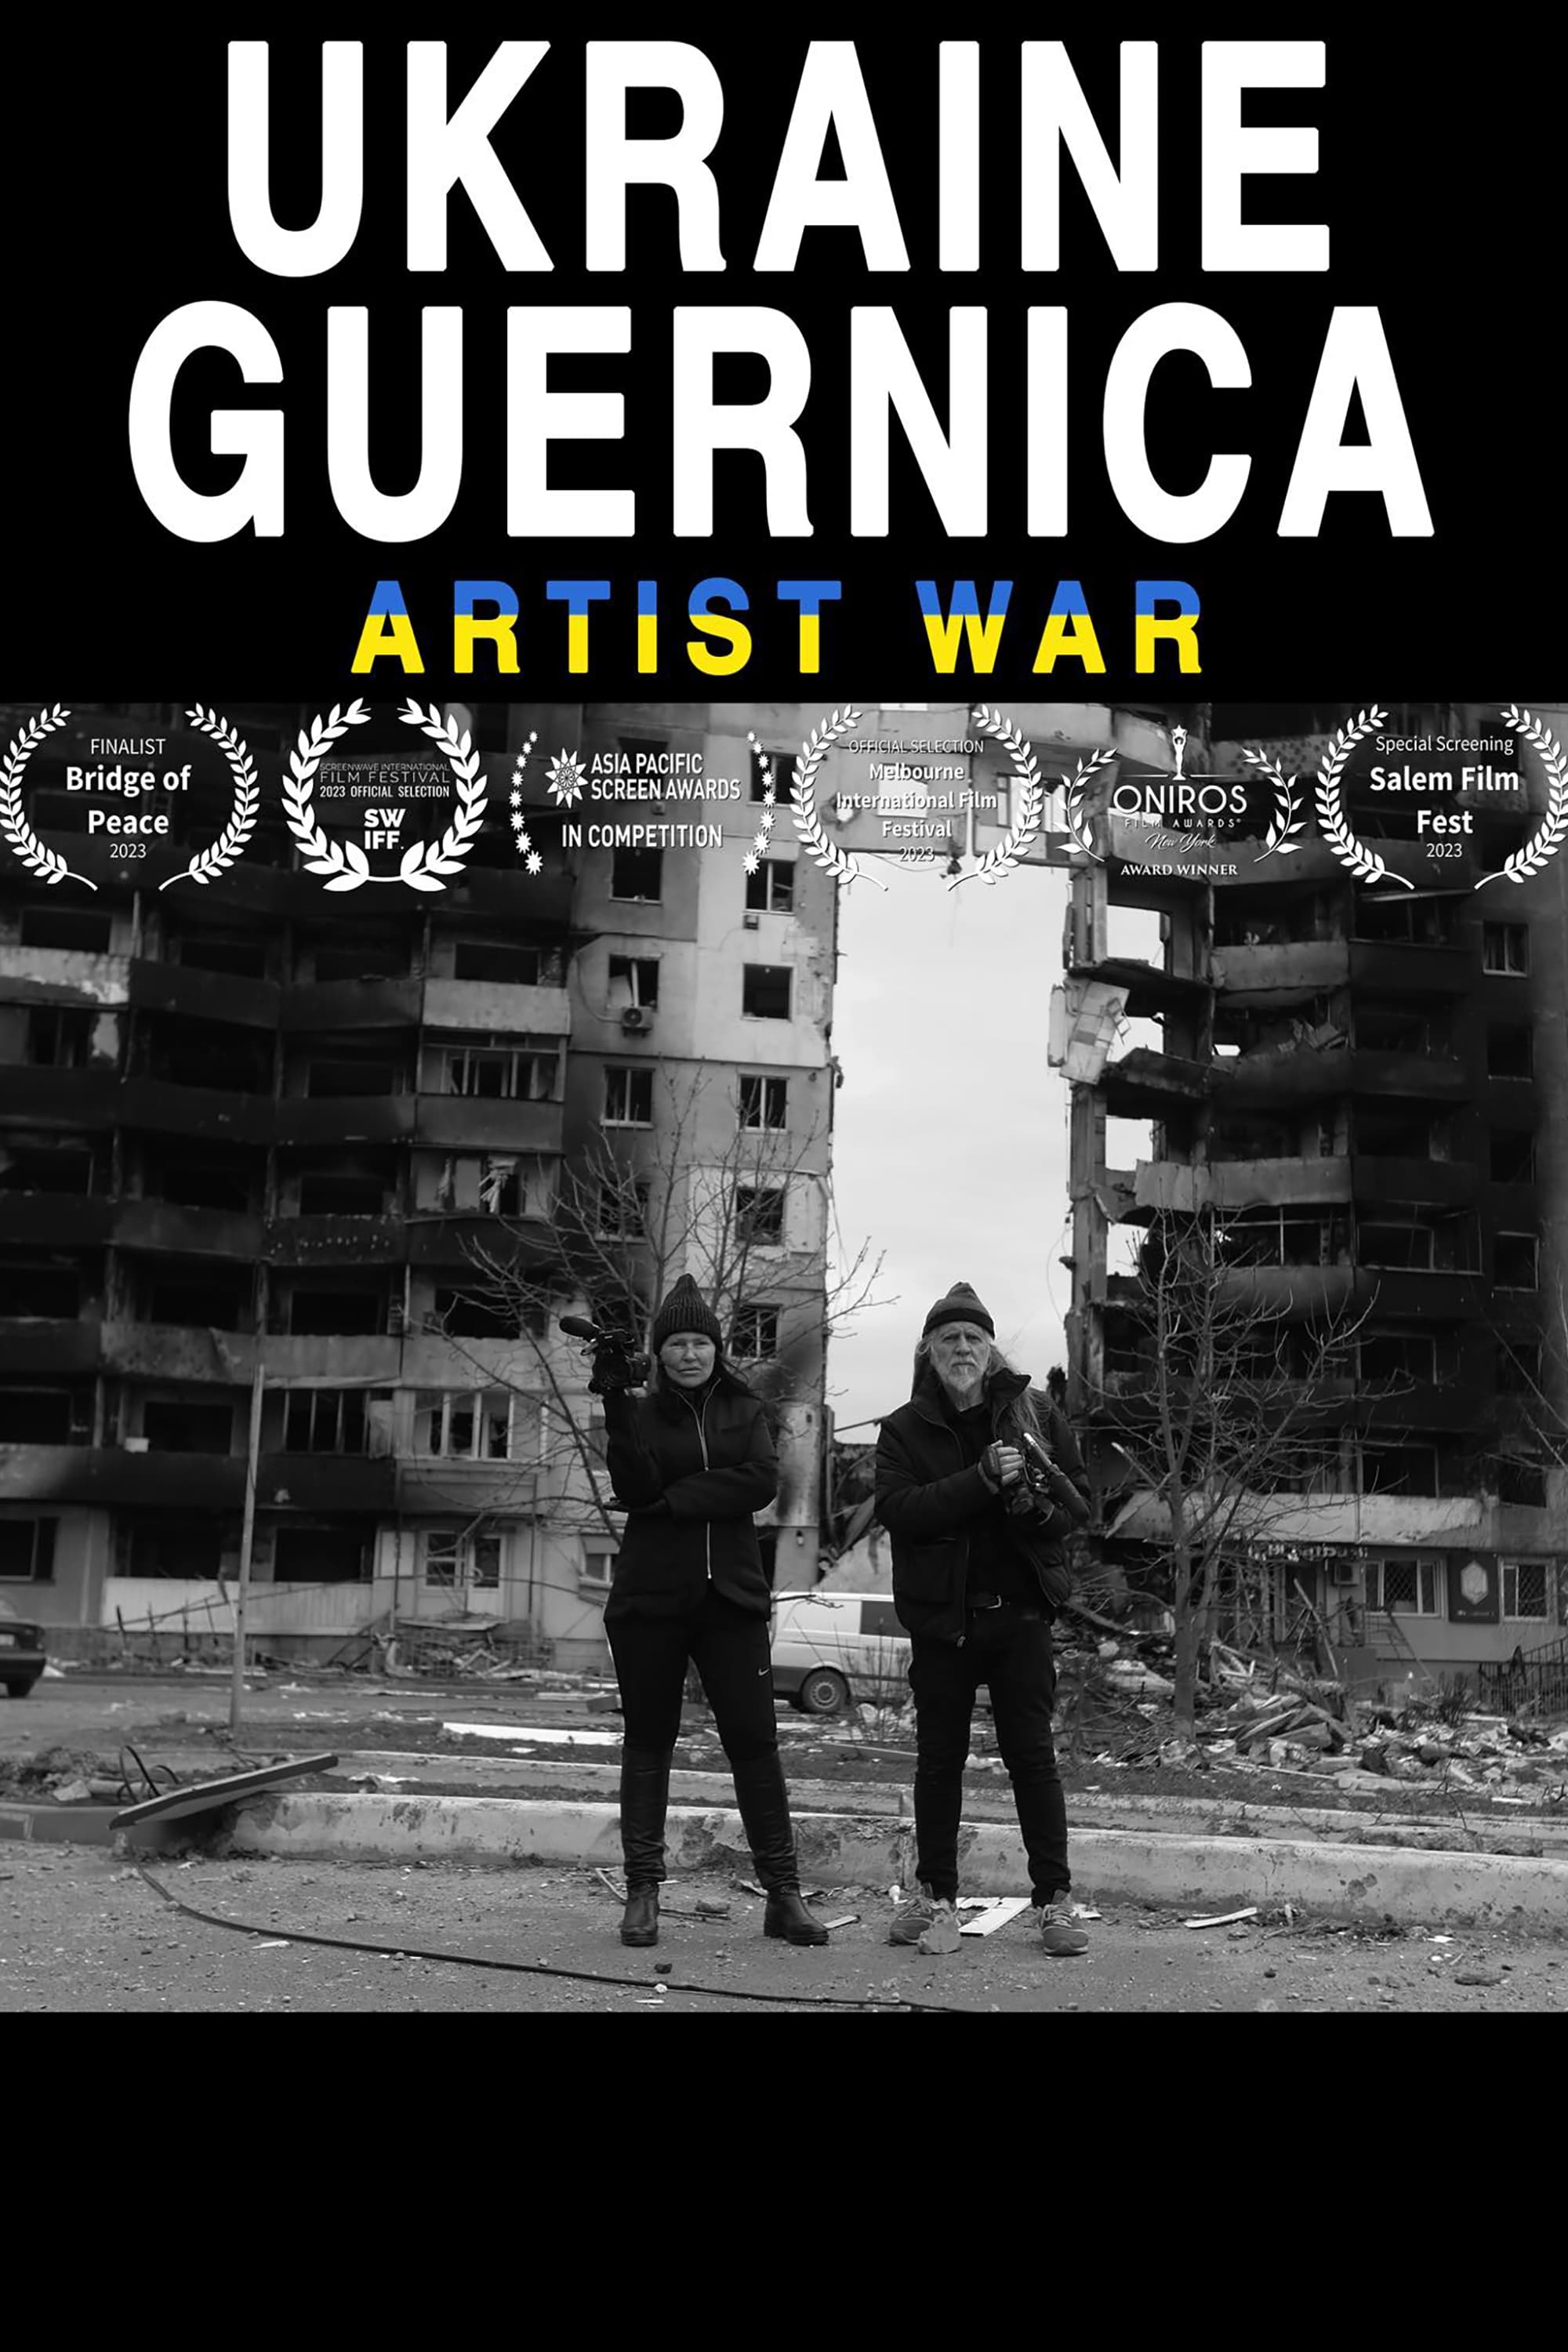 Ukraine Guernica - Artist War